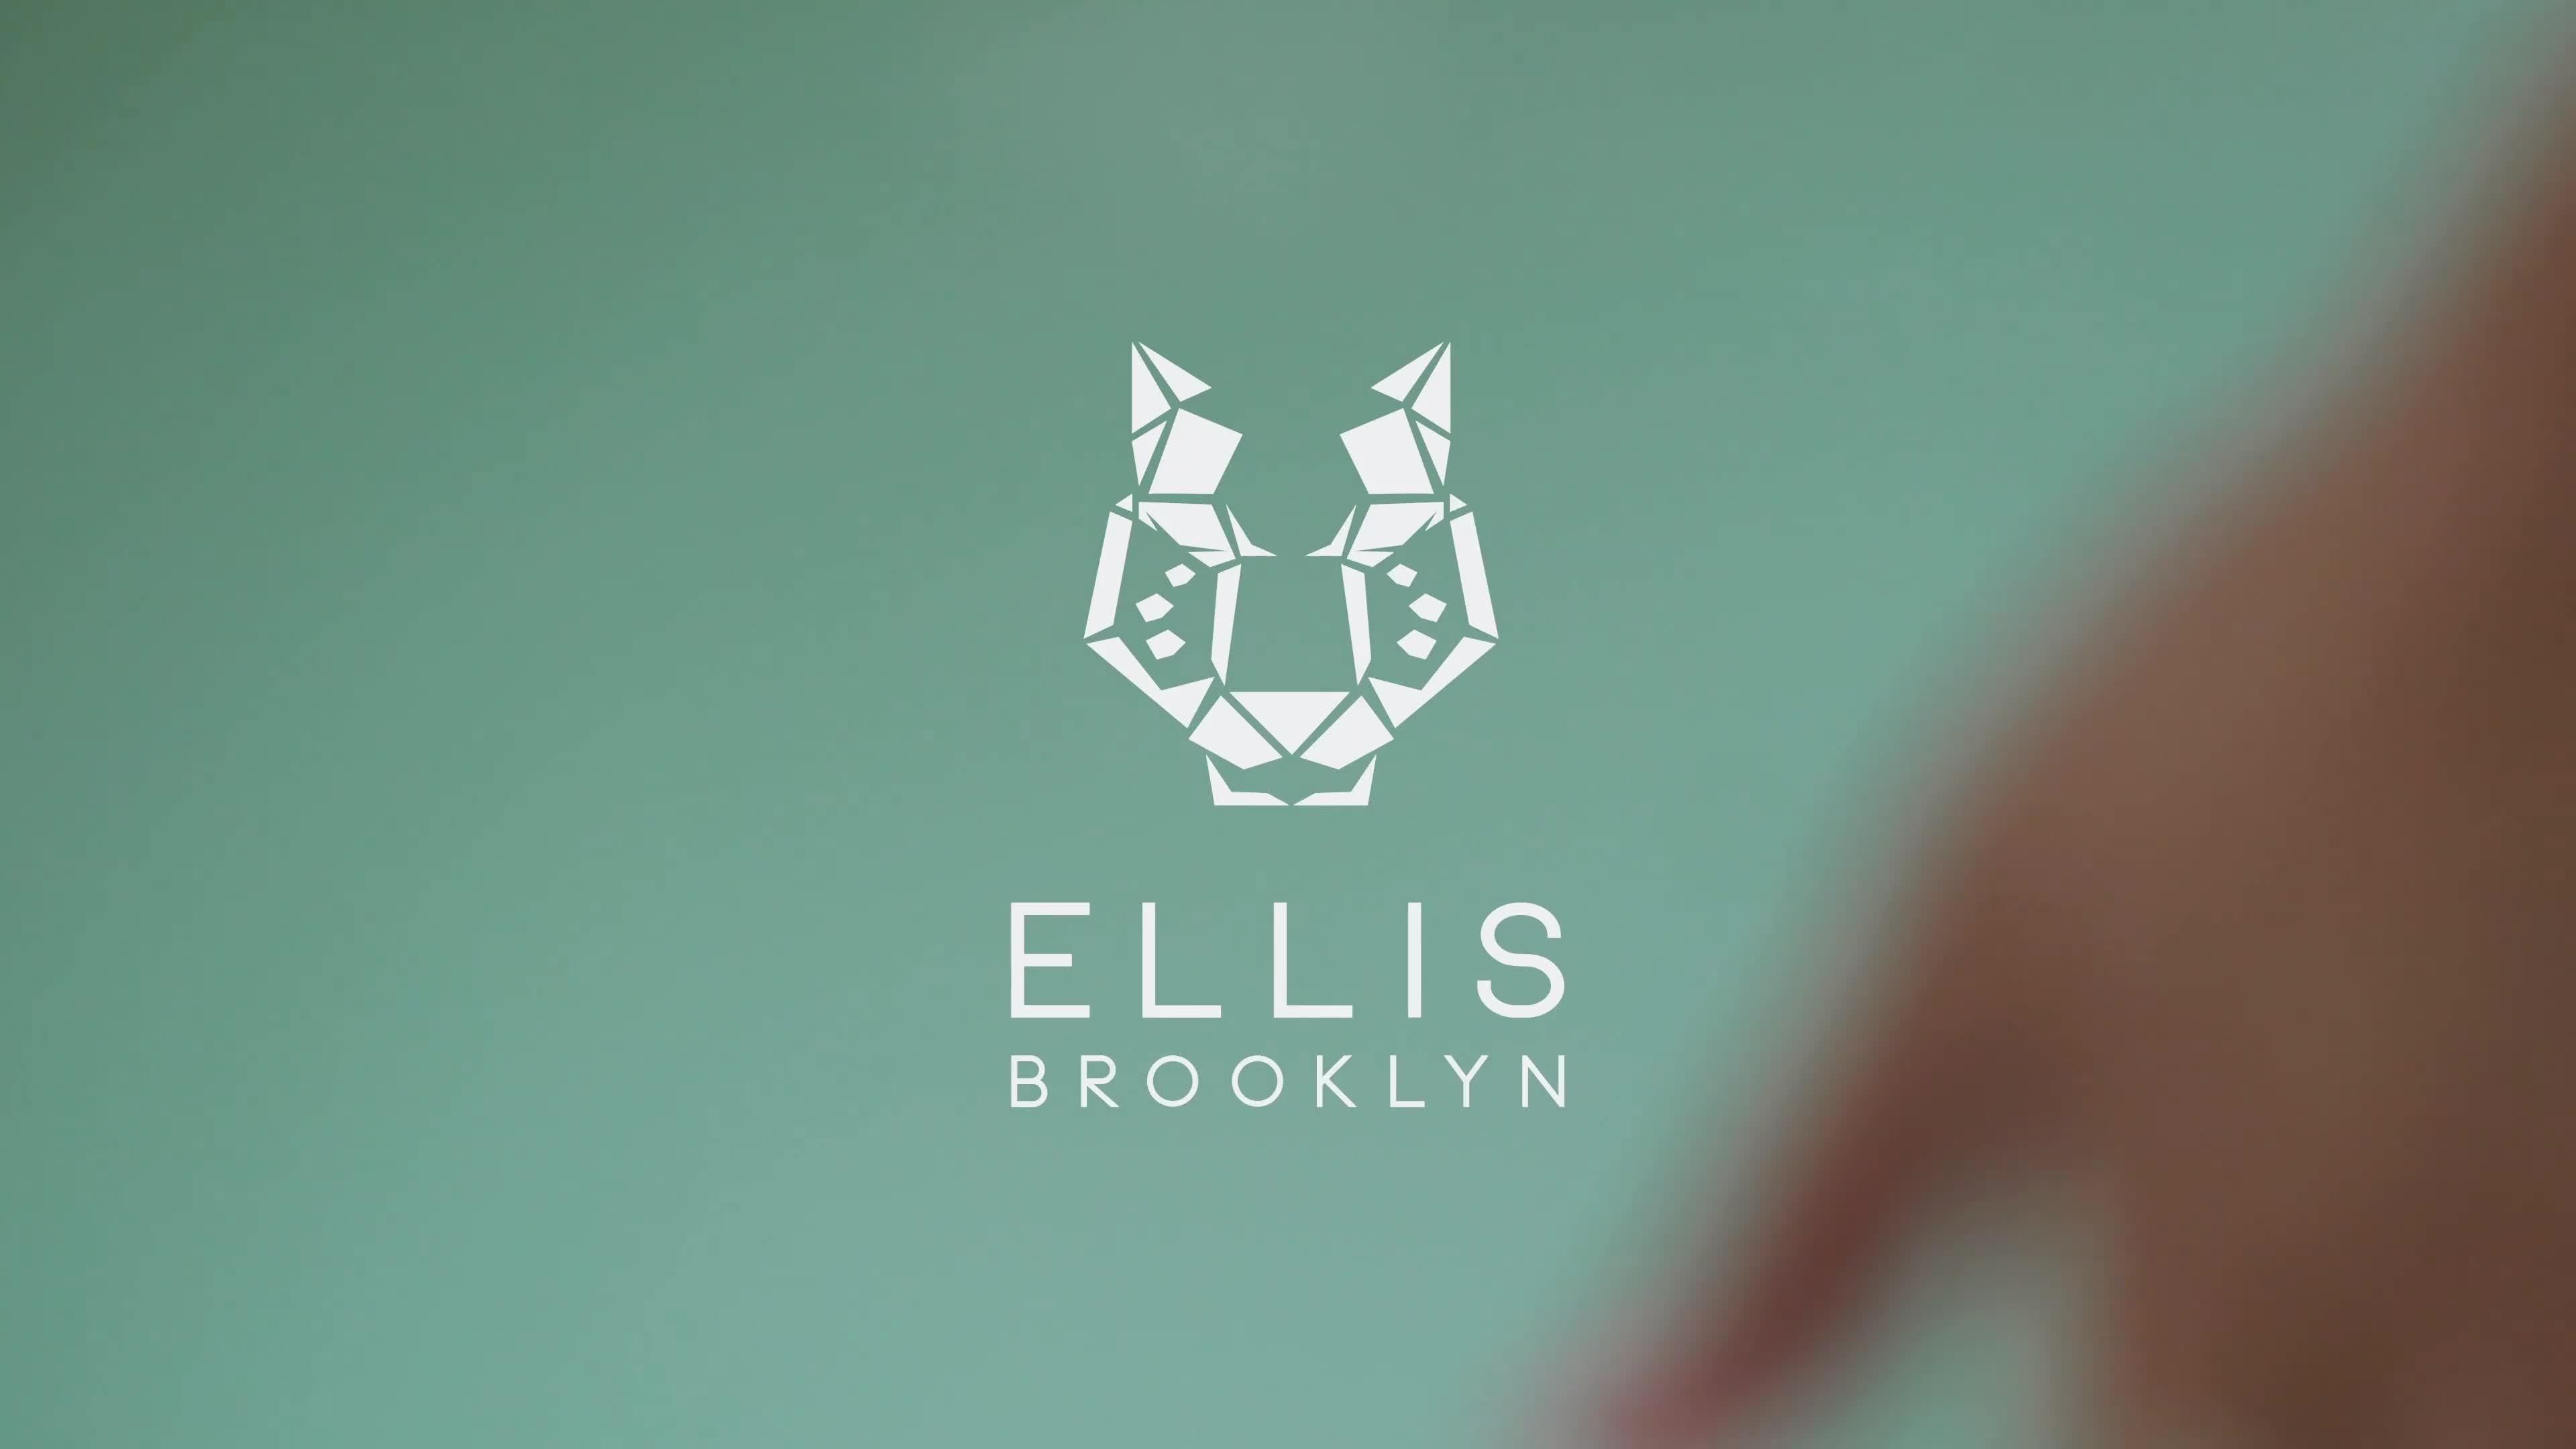 Ellis Brooklyn Myth Eau de Parfum - 1.7 oz